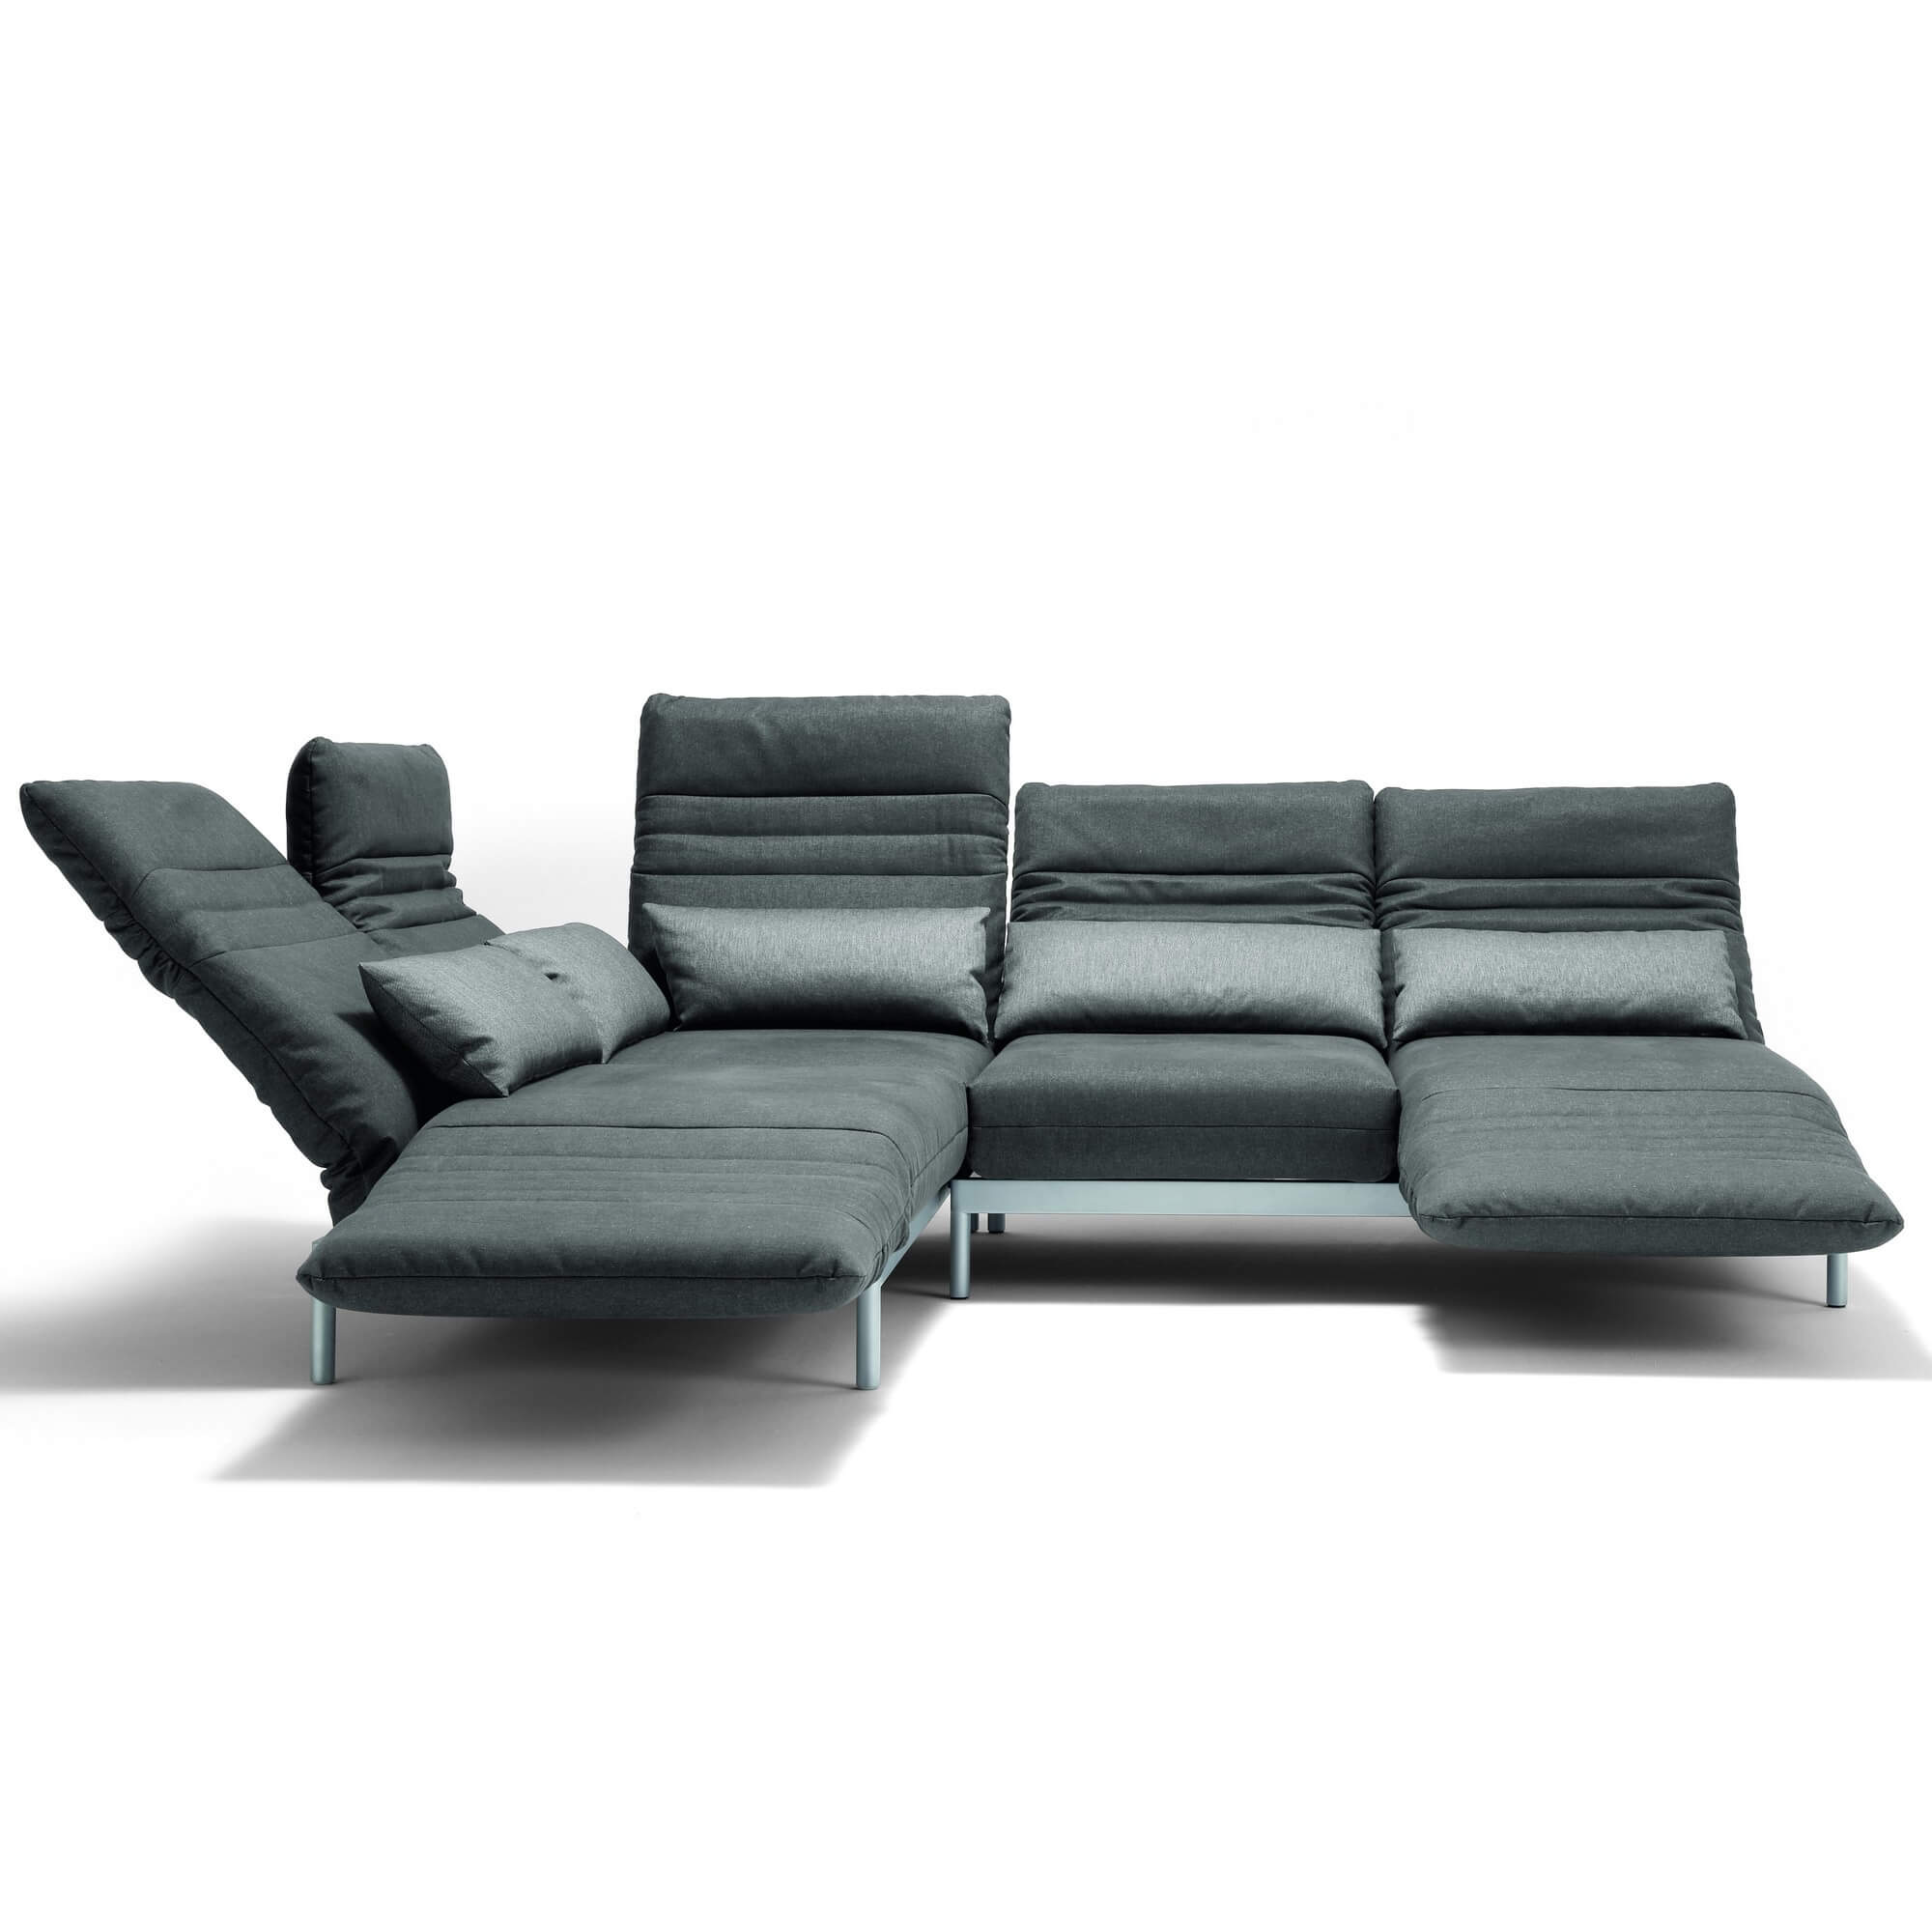 Современный диван Rolf Benz Plura из Германии